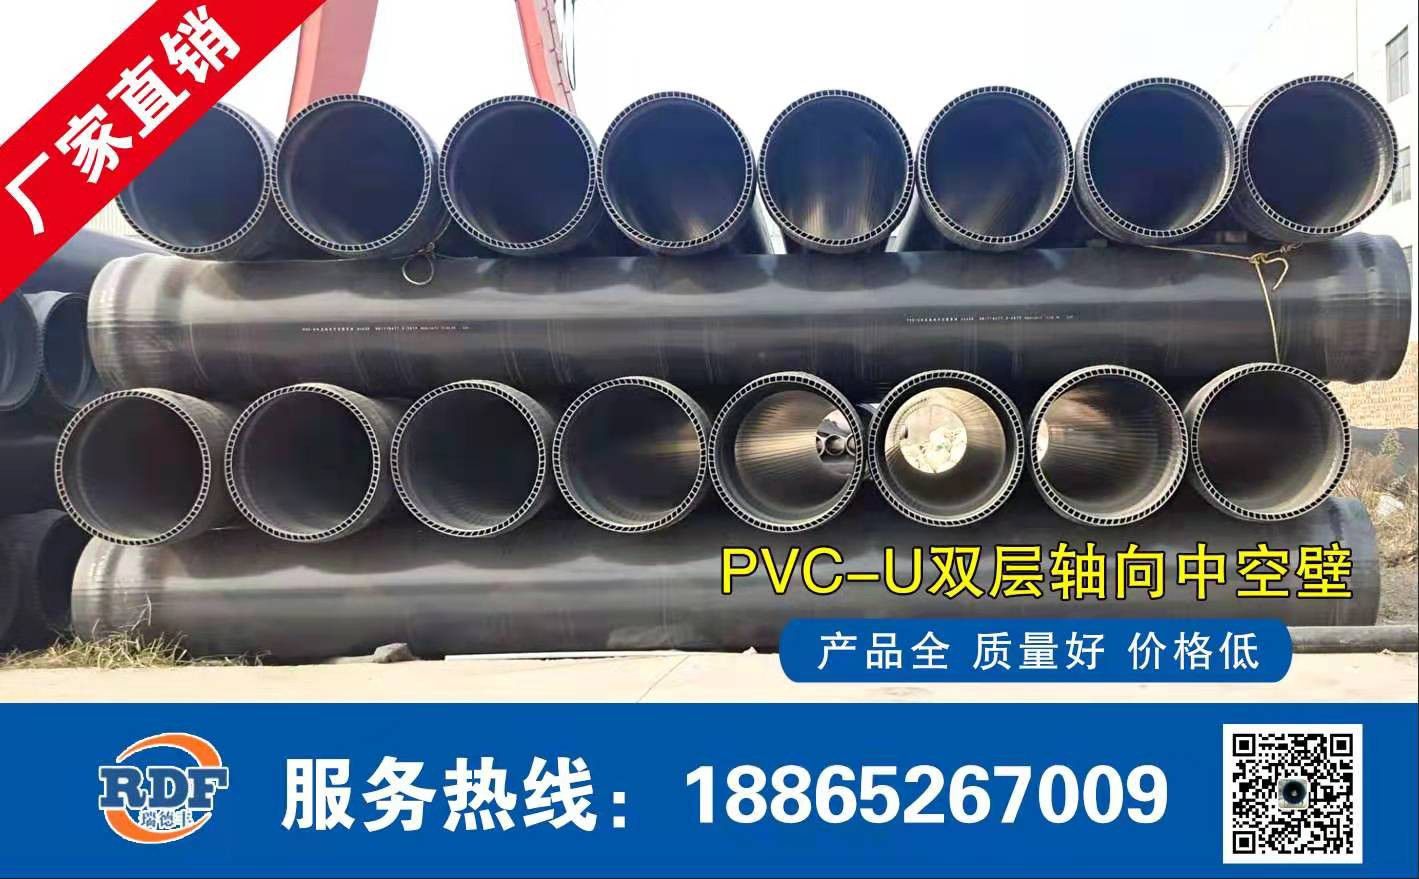 白山靖宇县PVC-U双层轴向中空壁管检修力度加大供需基本面或趋于弱平衡